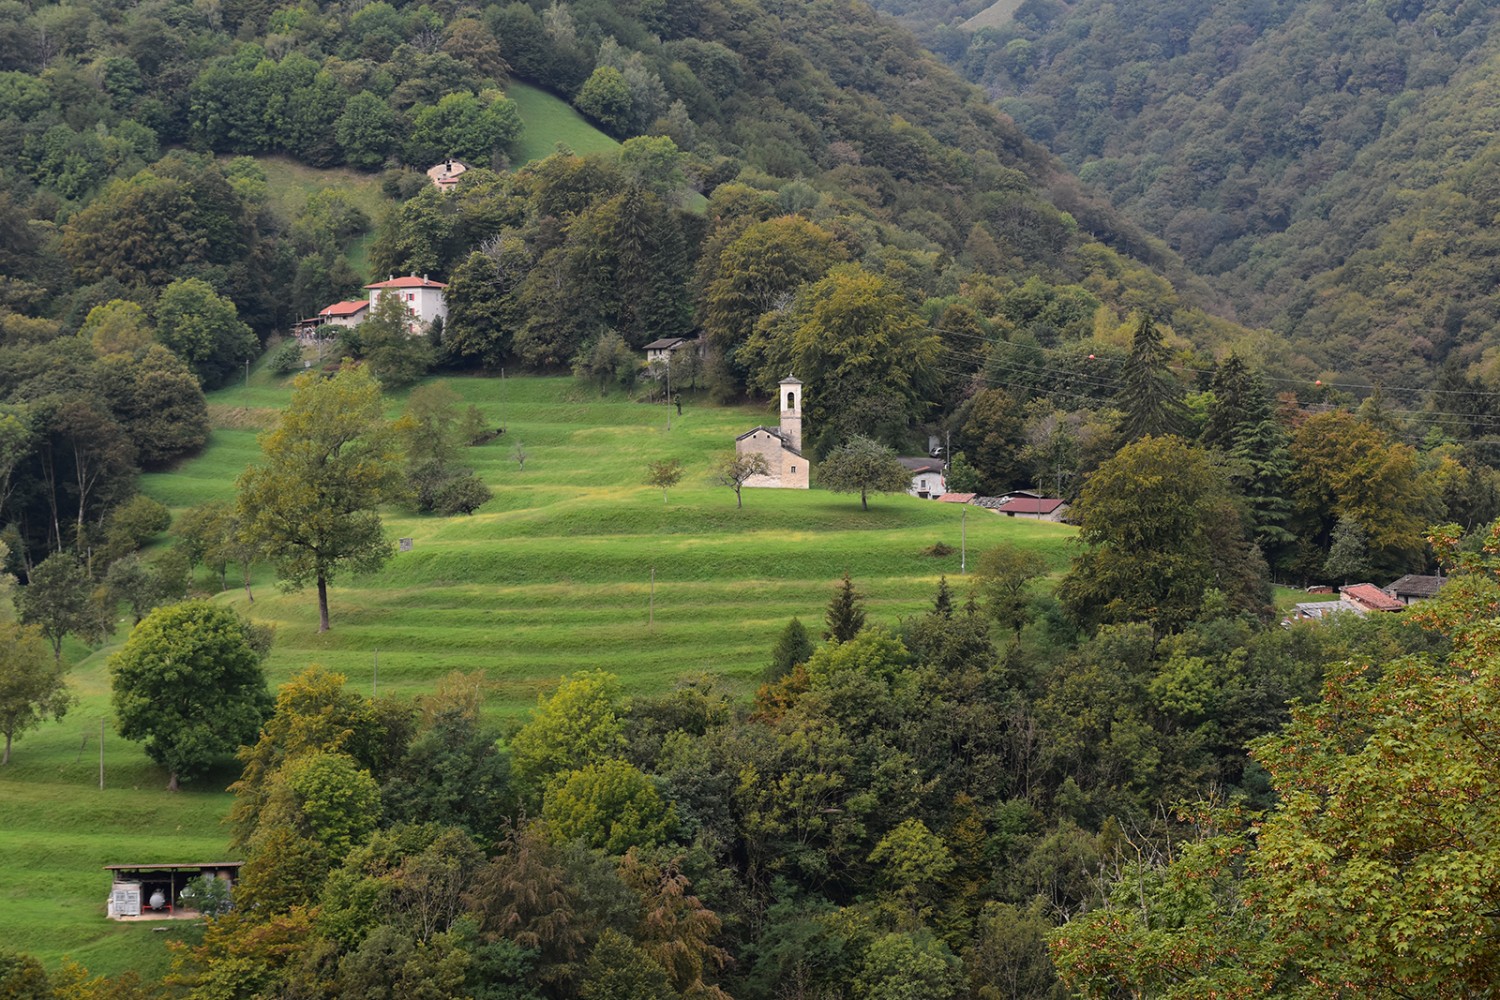 Die Terrassen des Weilers Tur dell’Alpe, am linken Ufer der Breggia. 
Bilder: Nathalie Stöckli
